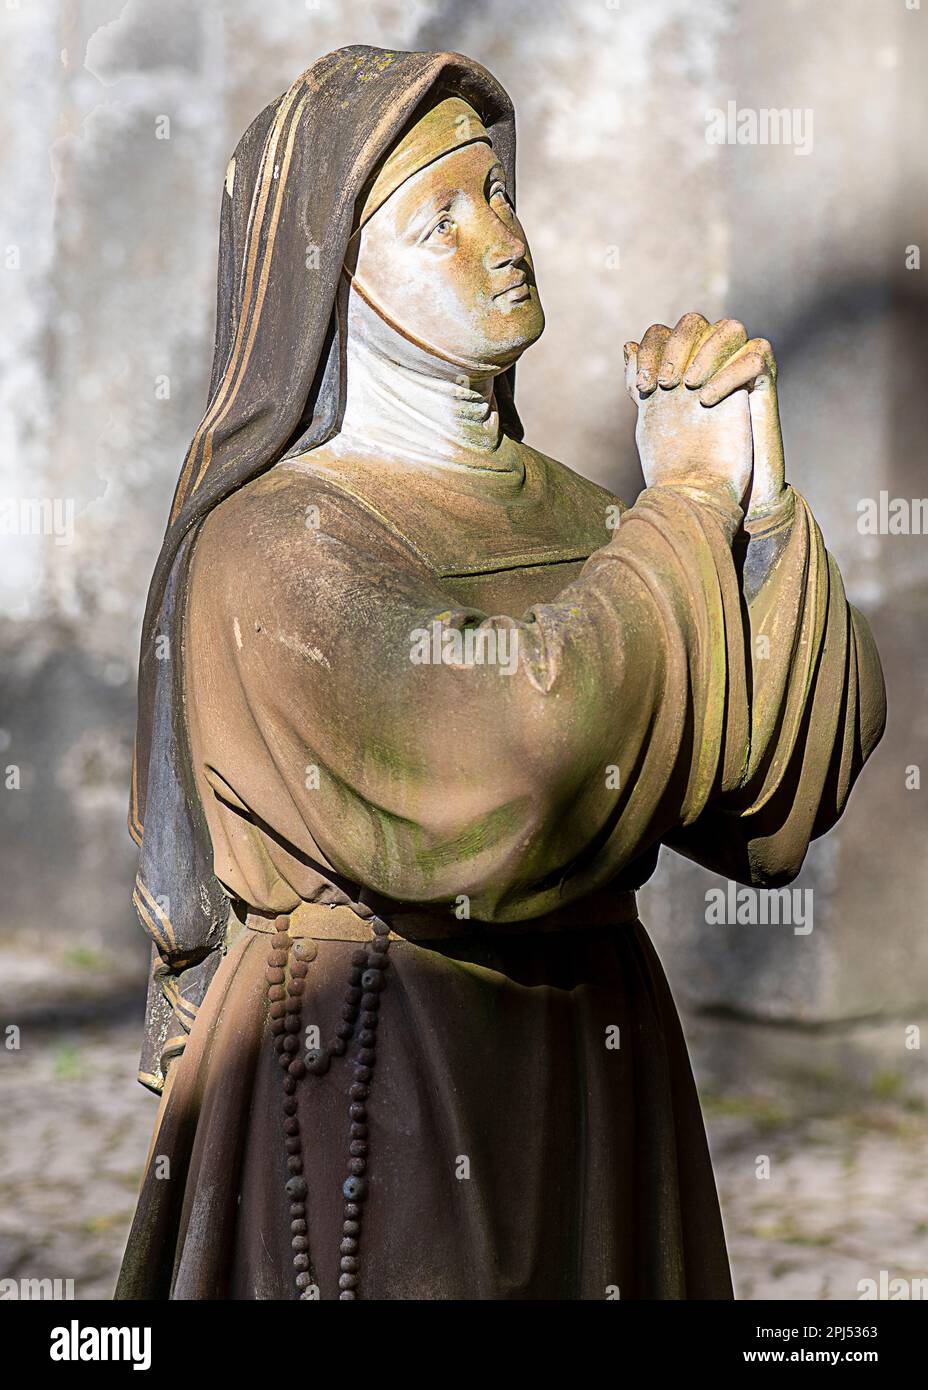 Toujours dans la prière, mais sculpté dans la pierre, une nonne figée à jamais dans la dévotion Banque D'Images